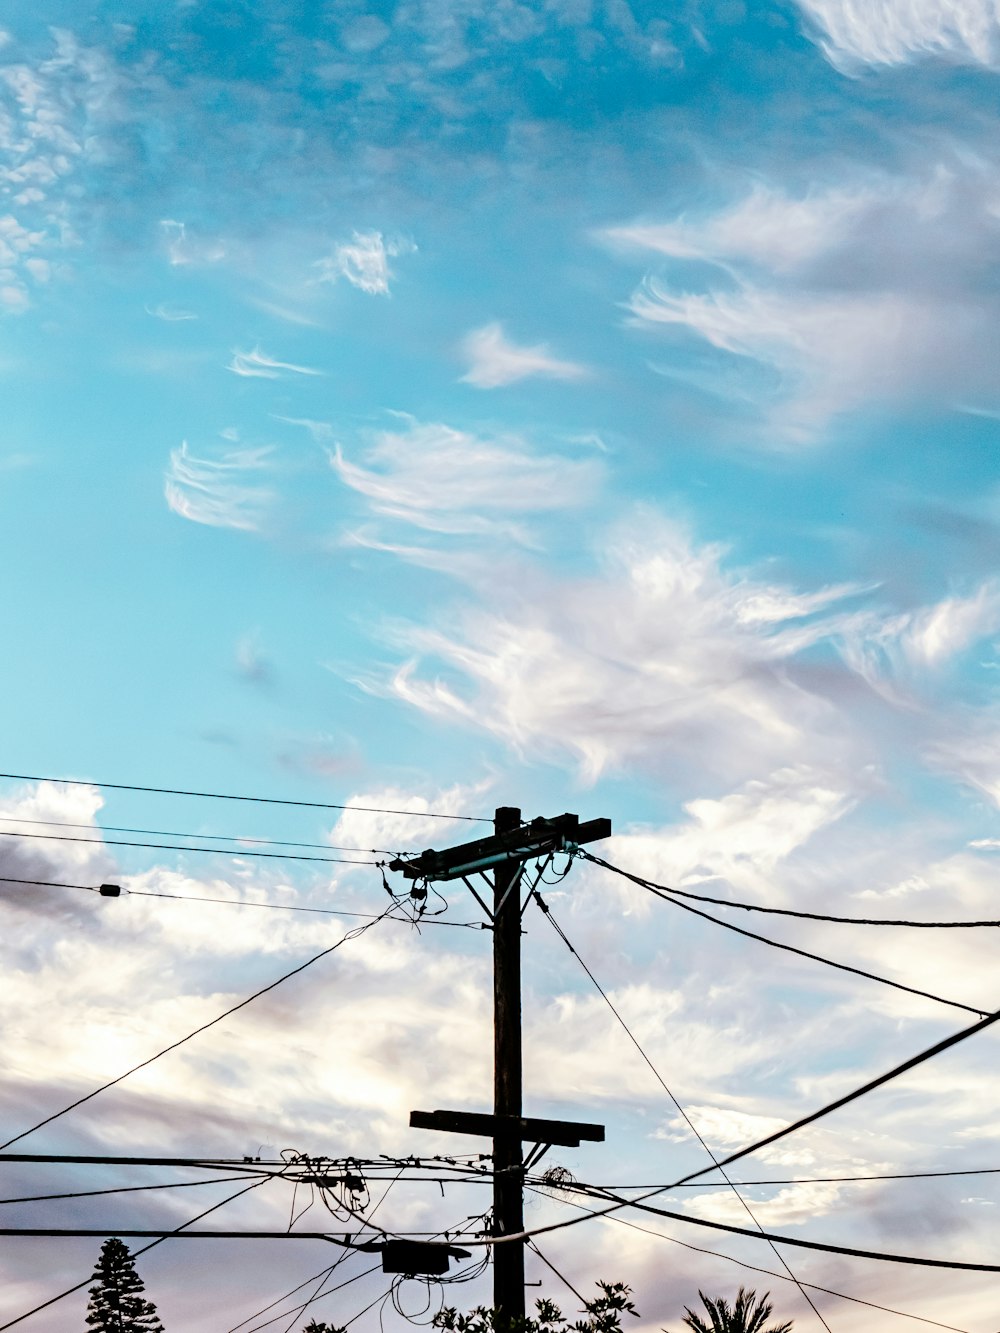 poste eléctrico negro bajo el cielo azul y nubes blancas durante el día